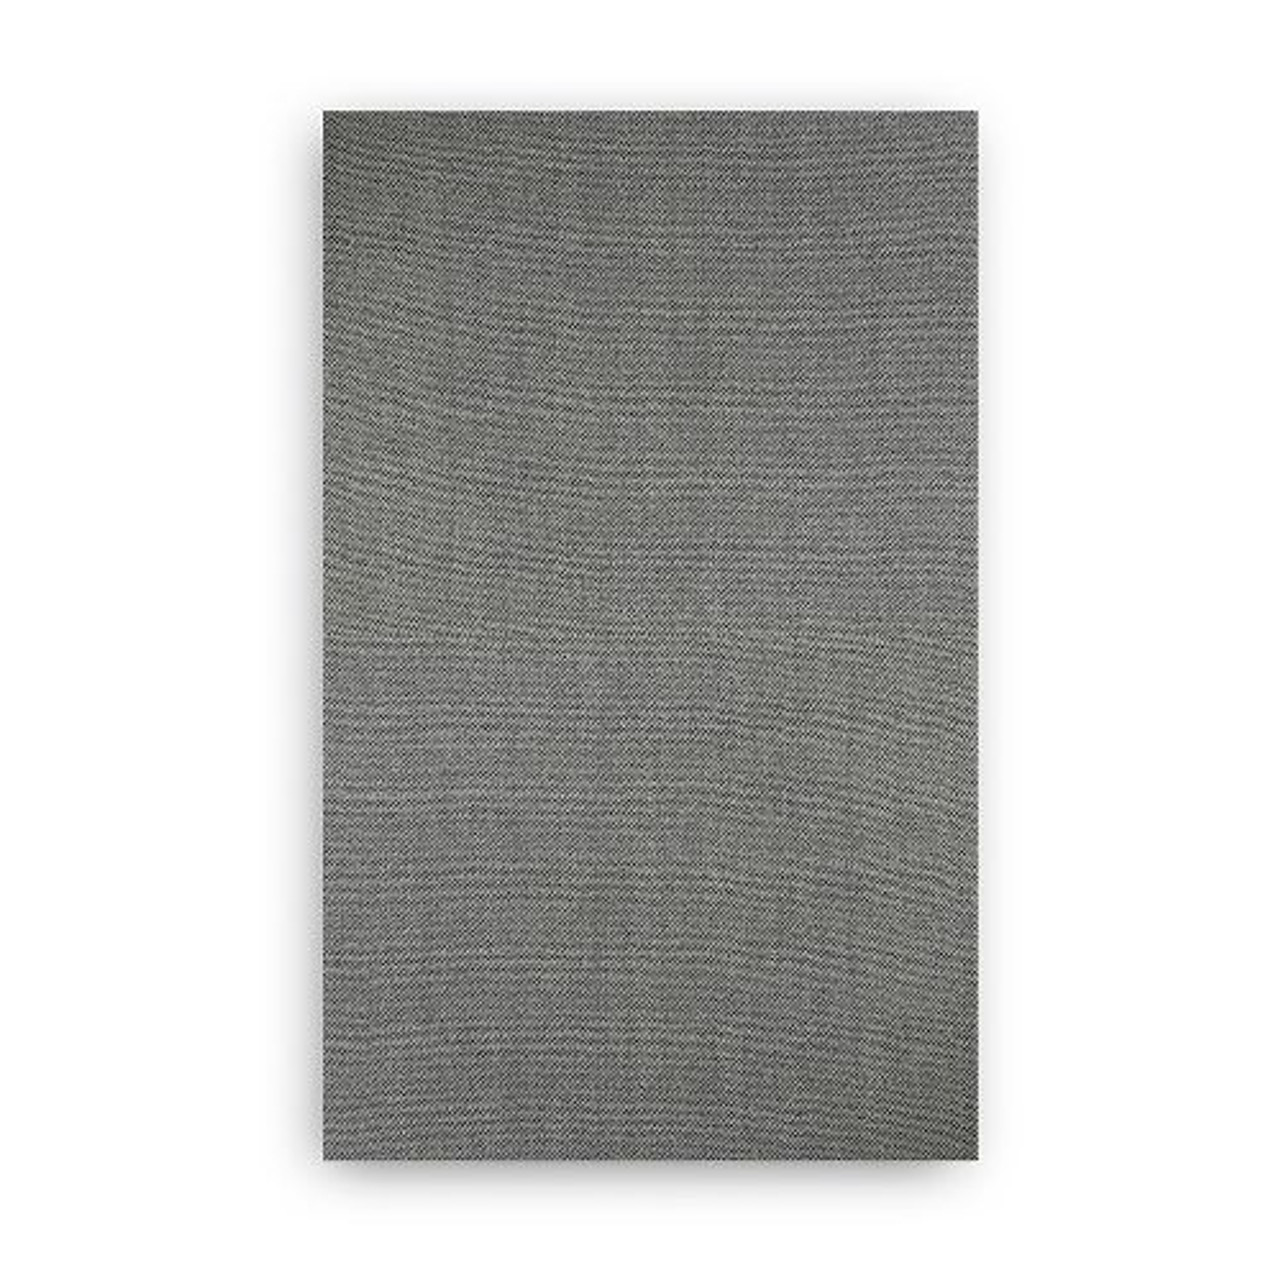 Aalto D3 - cover - Gabriel Capture 04102 light grey